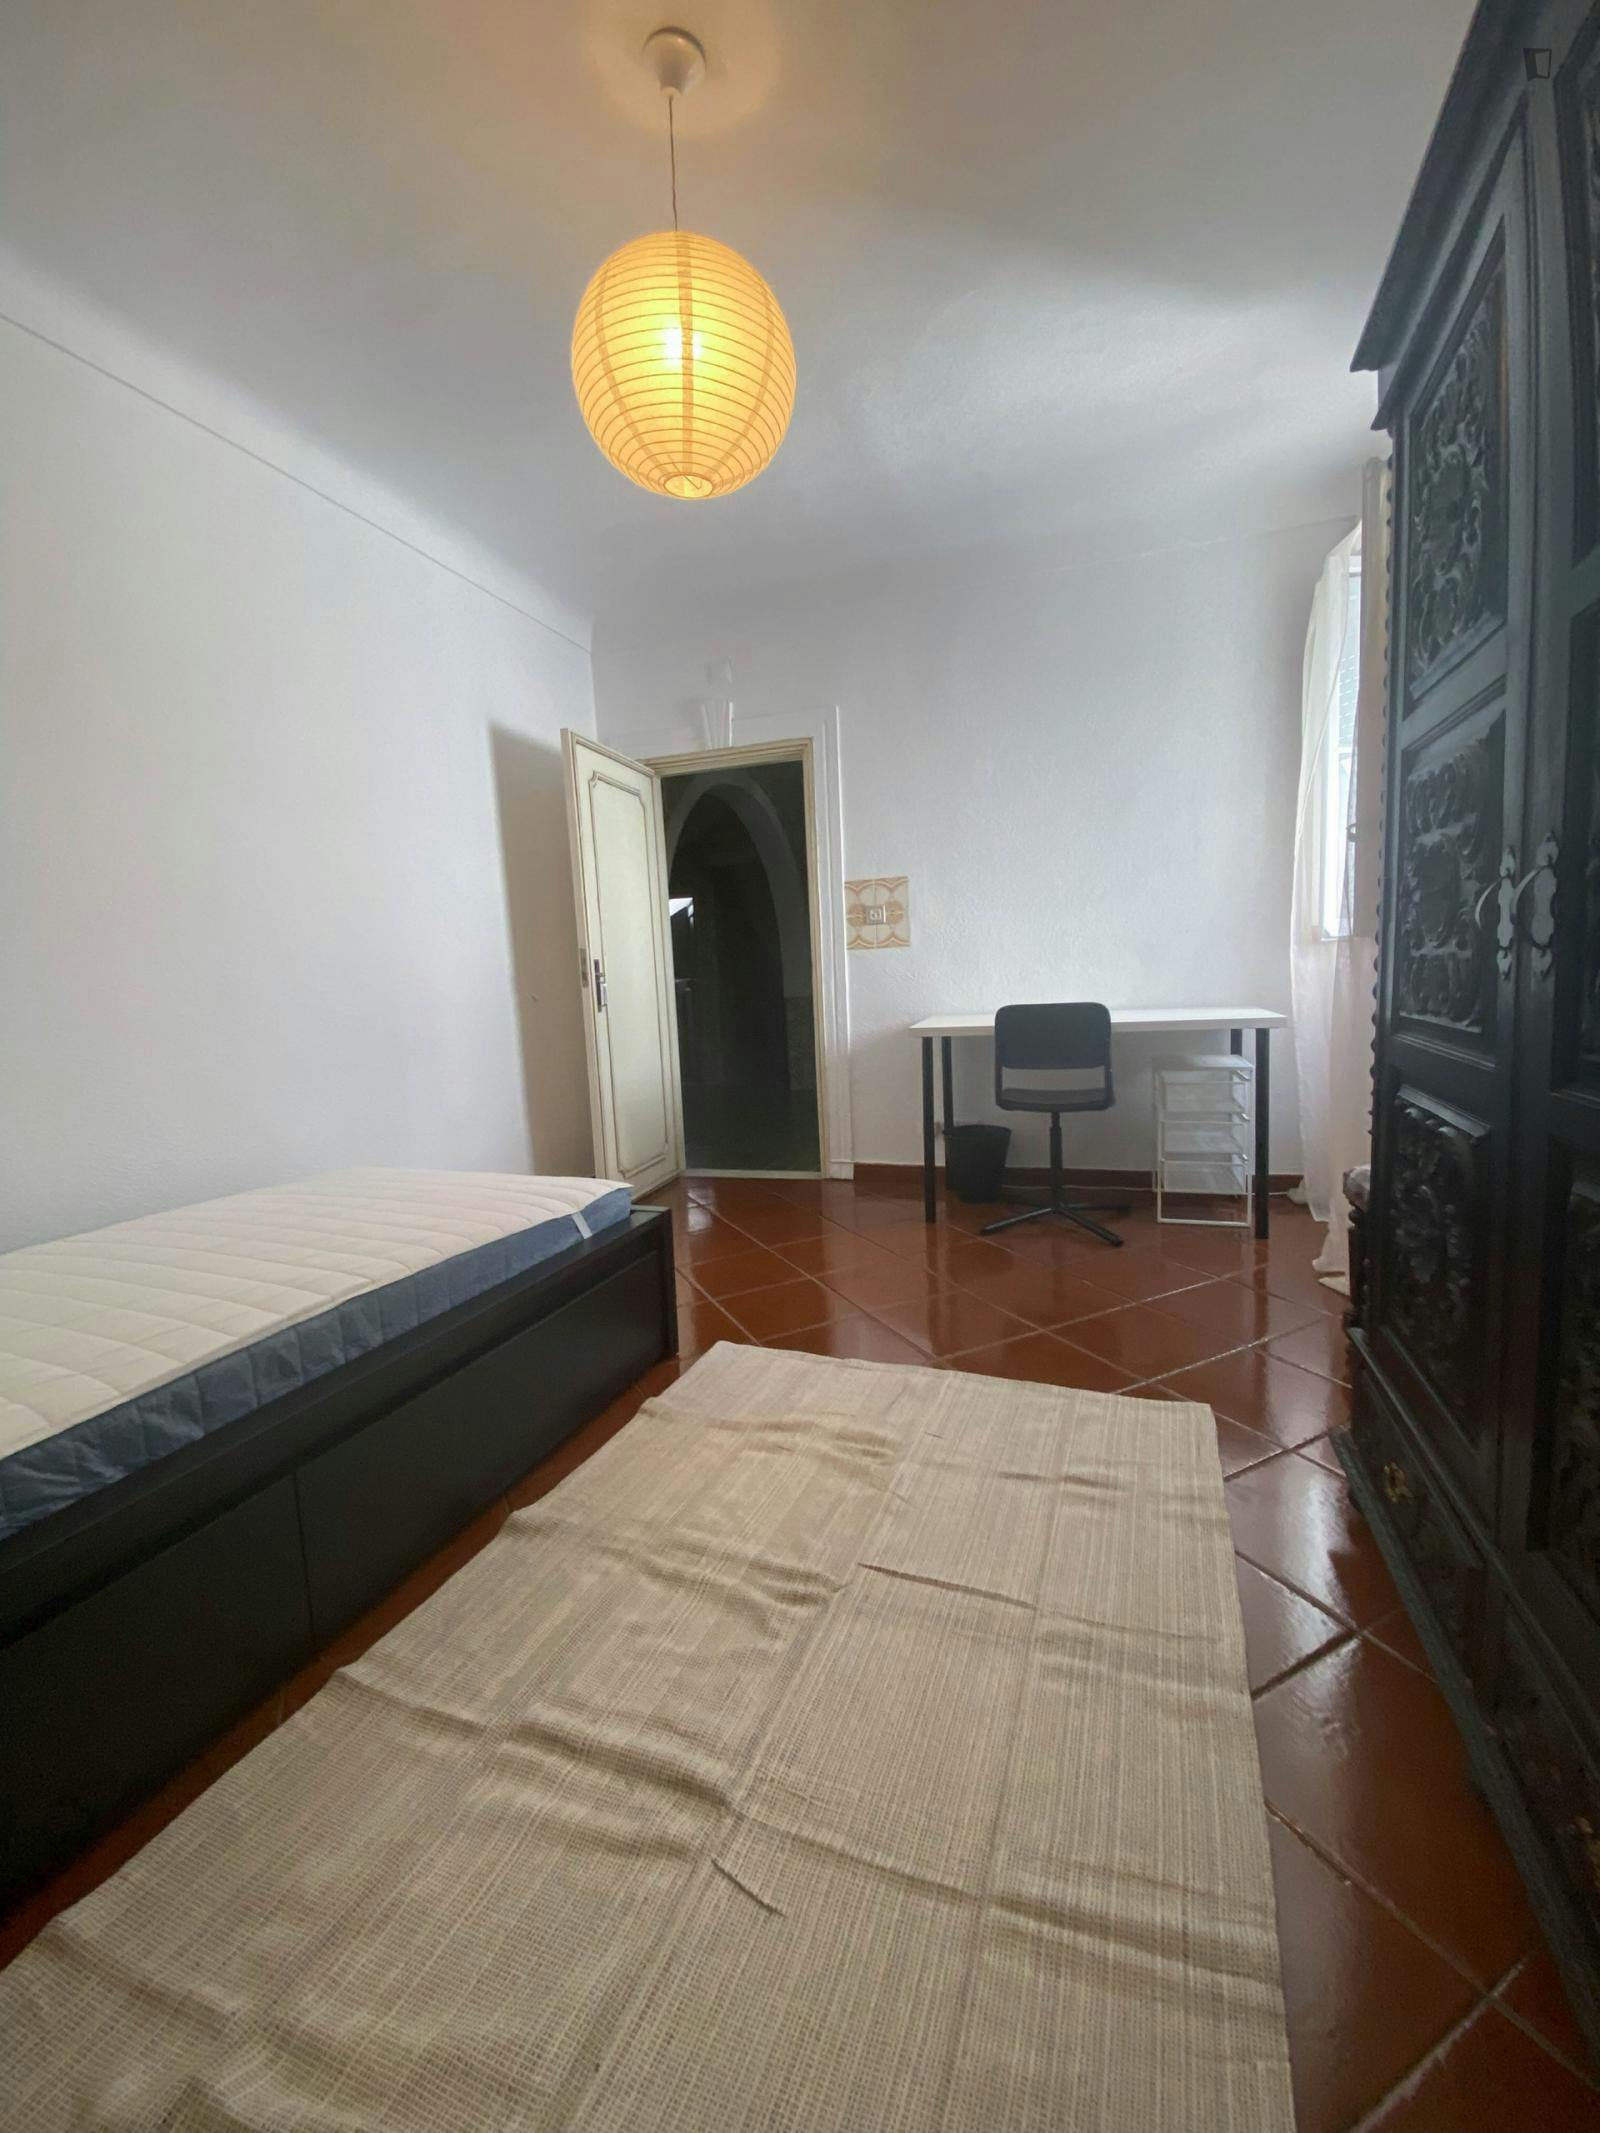 Very nice single bedroom in the heart of Évora - 50m near Praça do Giraldo